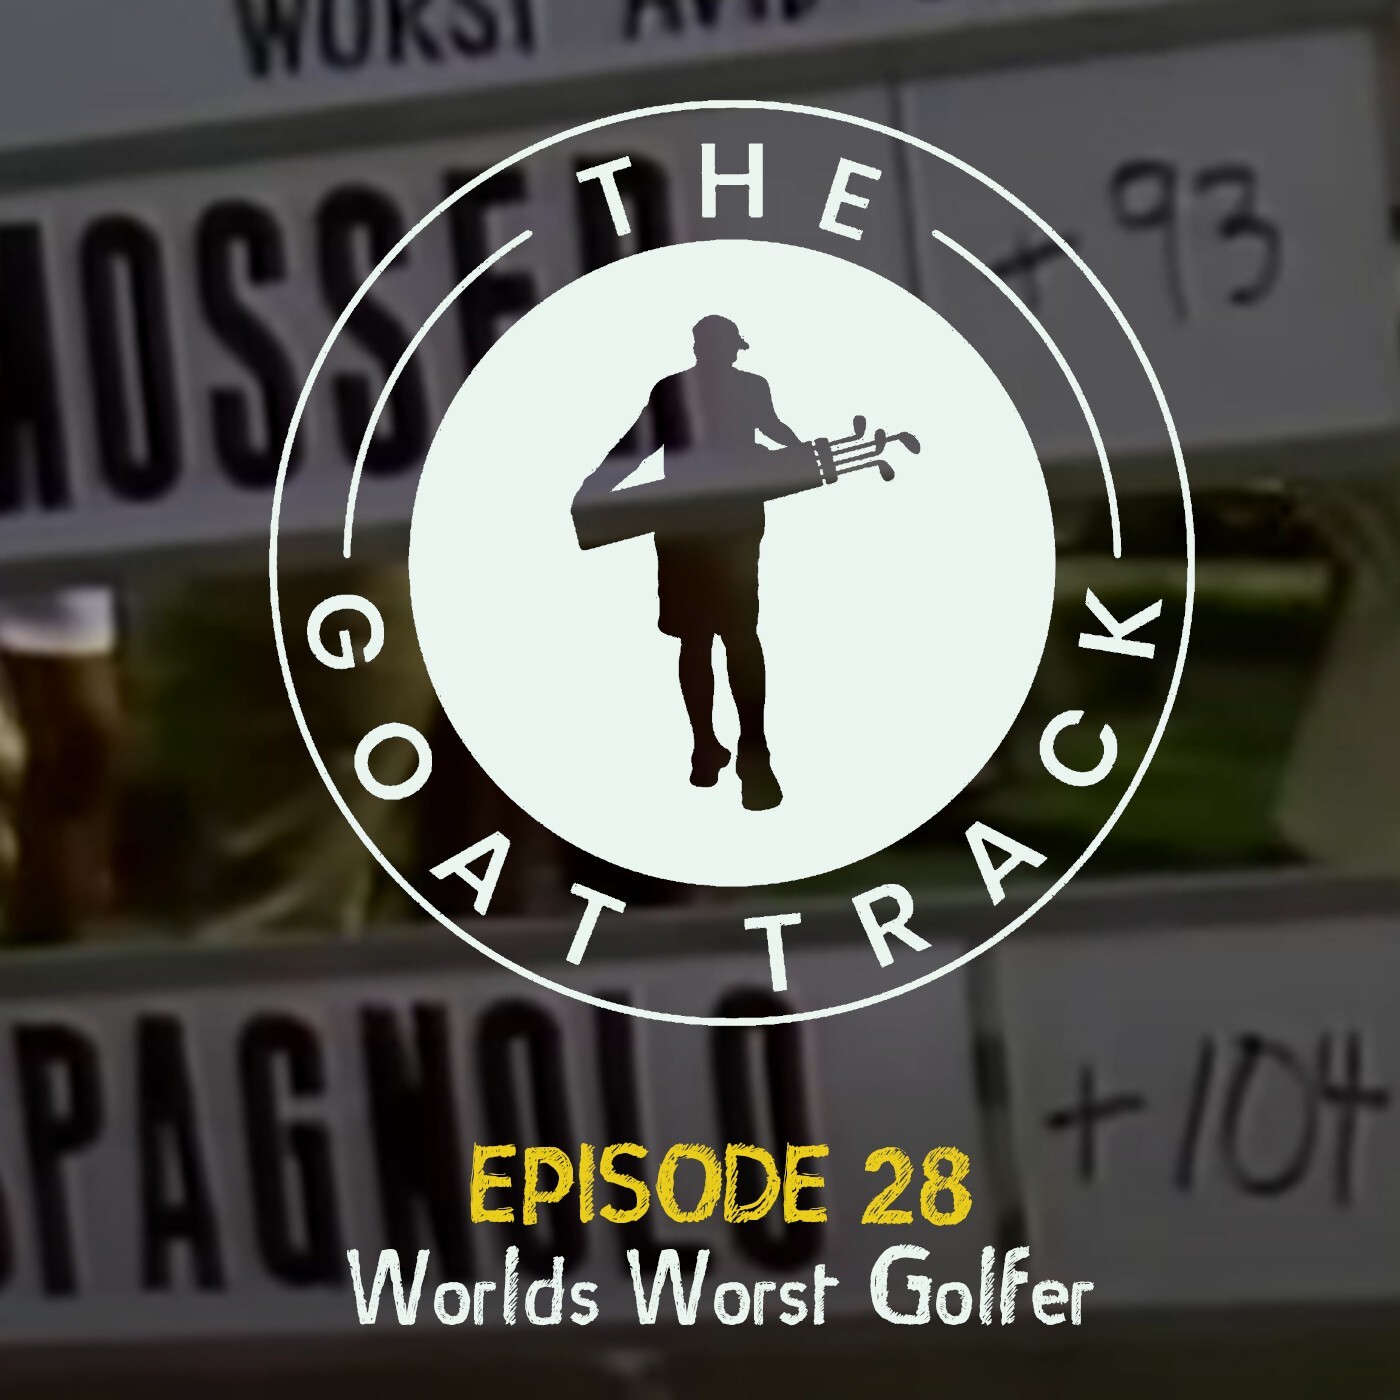 Episode 28: Worlds Worst Golfer